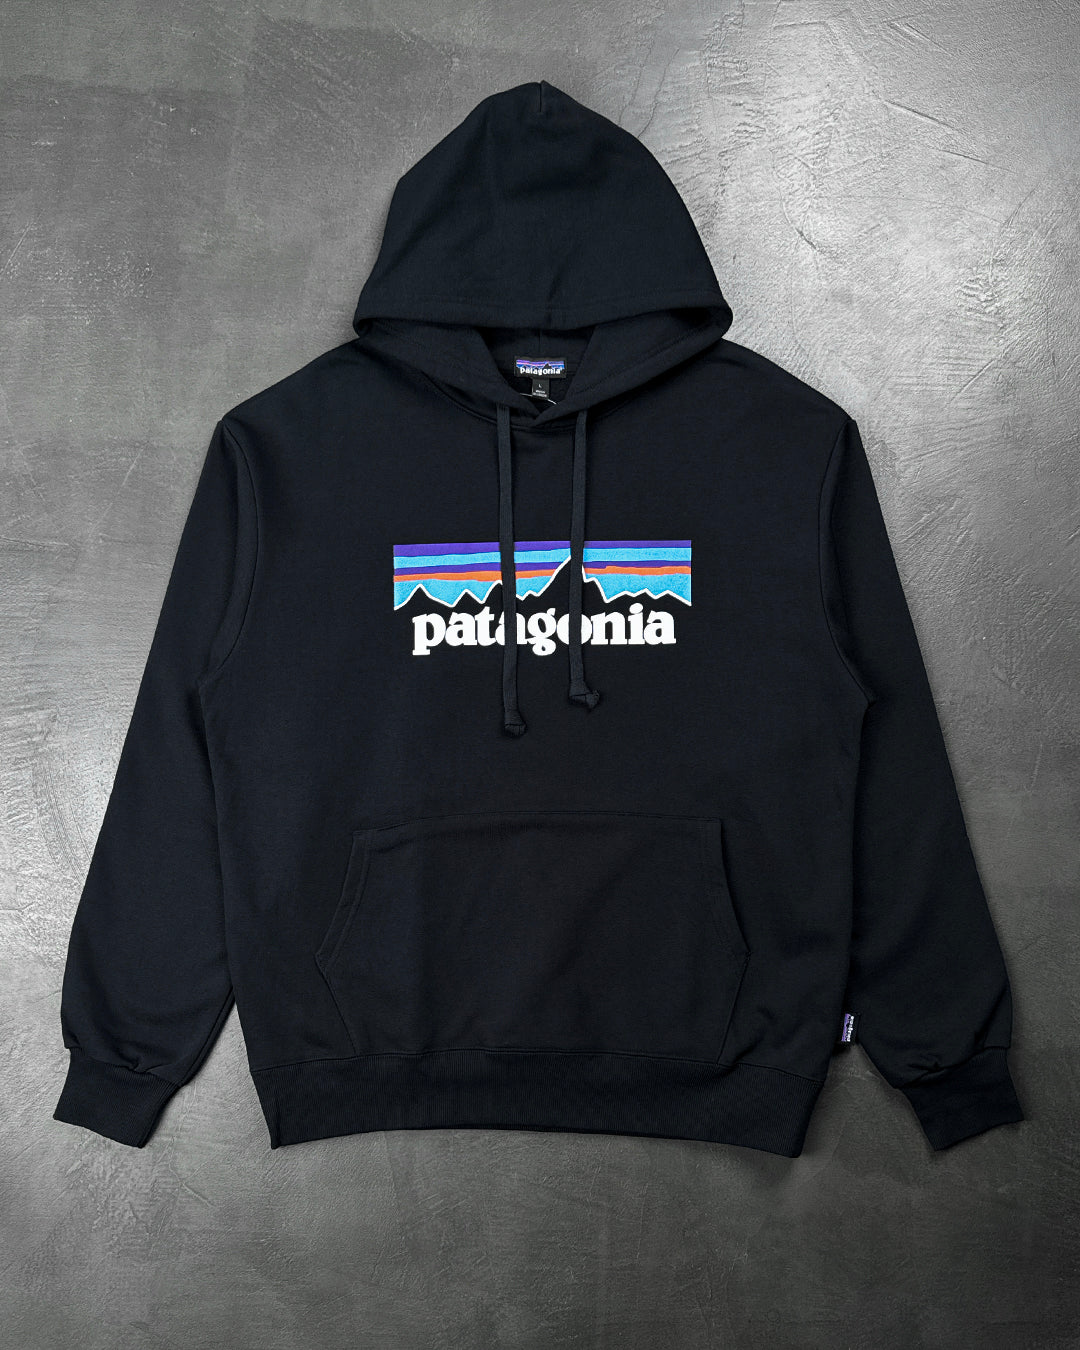 Patagonia P-6 Logo Uprisal Hoody Black